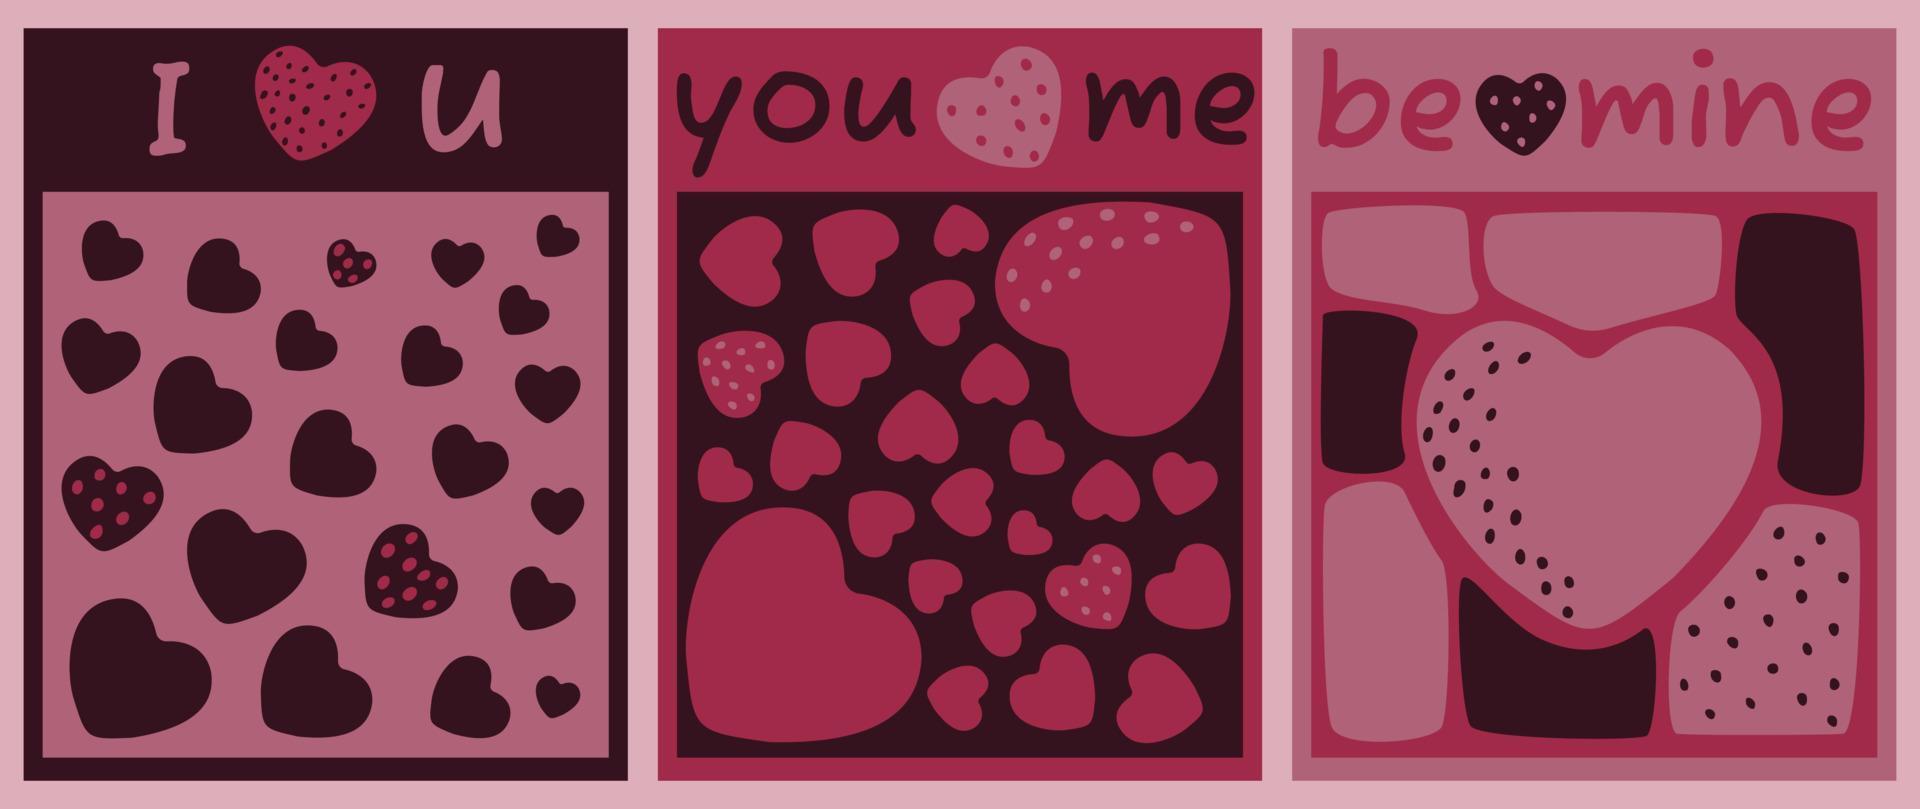 vektor illustration av kärlek, hjärtan. igenkännande kort - jag kärlek du, du och mig, vara mina. vykort, hälsningar, posters i de stil av minimalism.